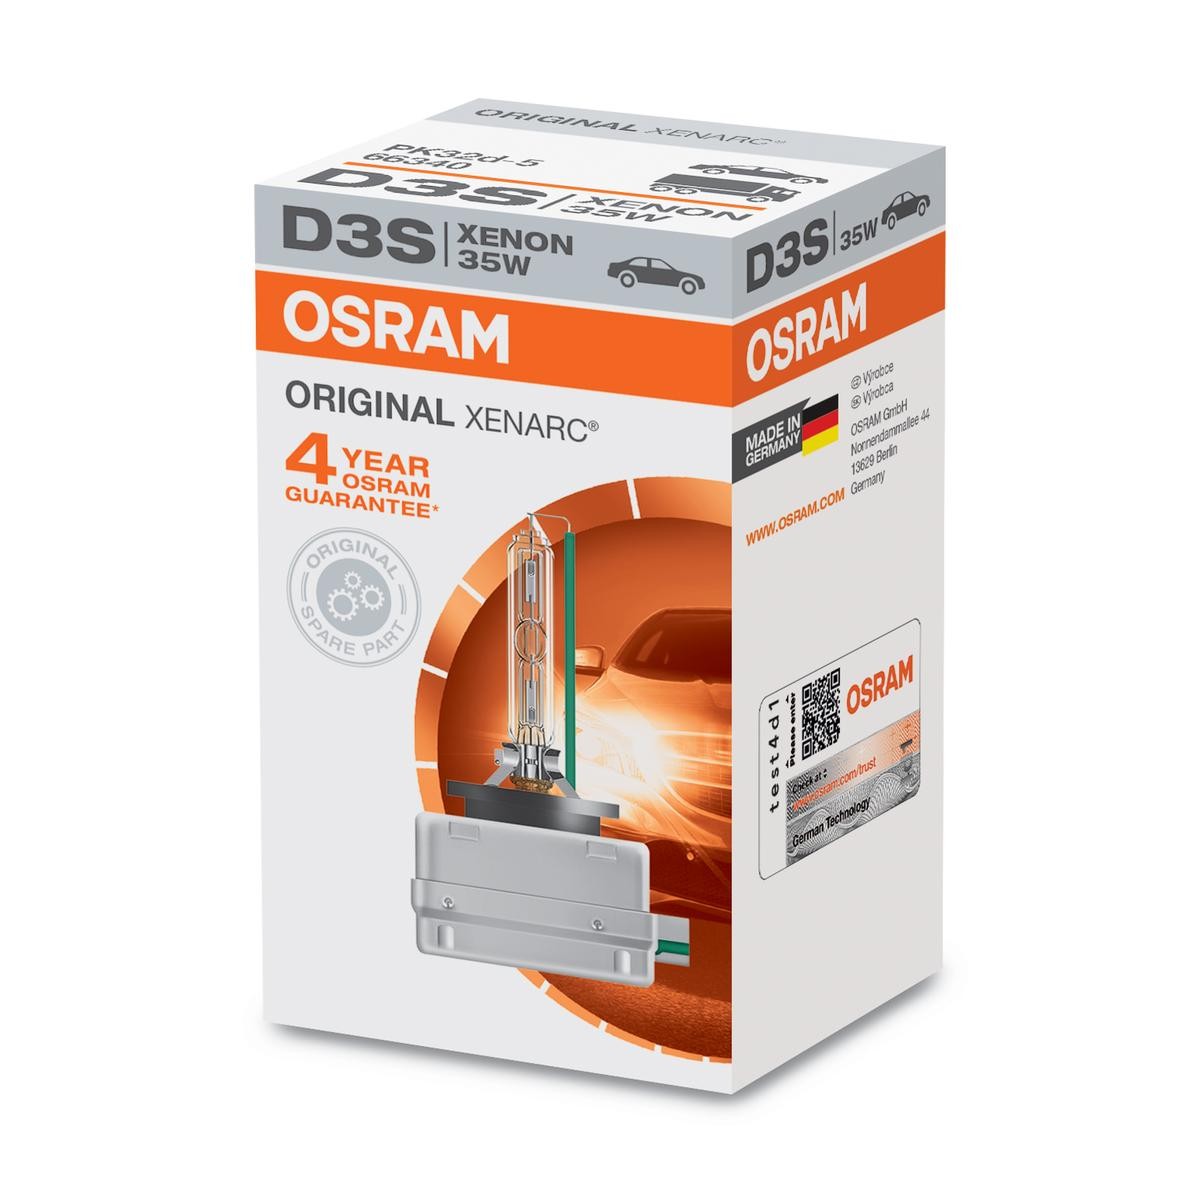 D3S OSRAM XENARC ORIGINAL D3S (Gasentladungslampe) 42V 35W PK32d-5 4500K Xenon Glühlampe, Fernscheinwerfer 66340 kaufen